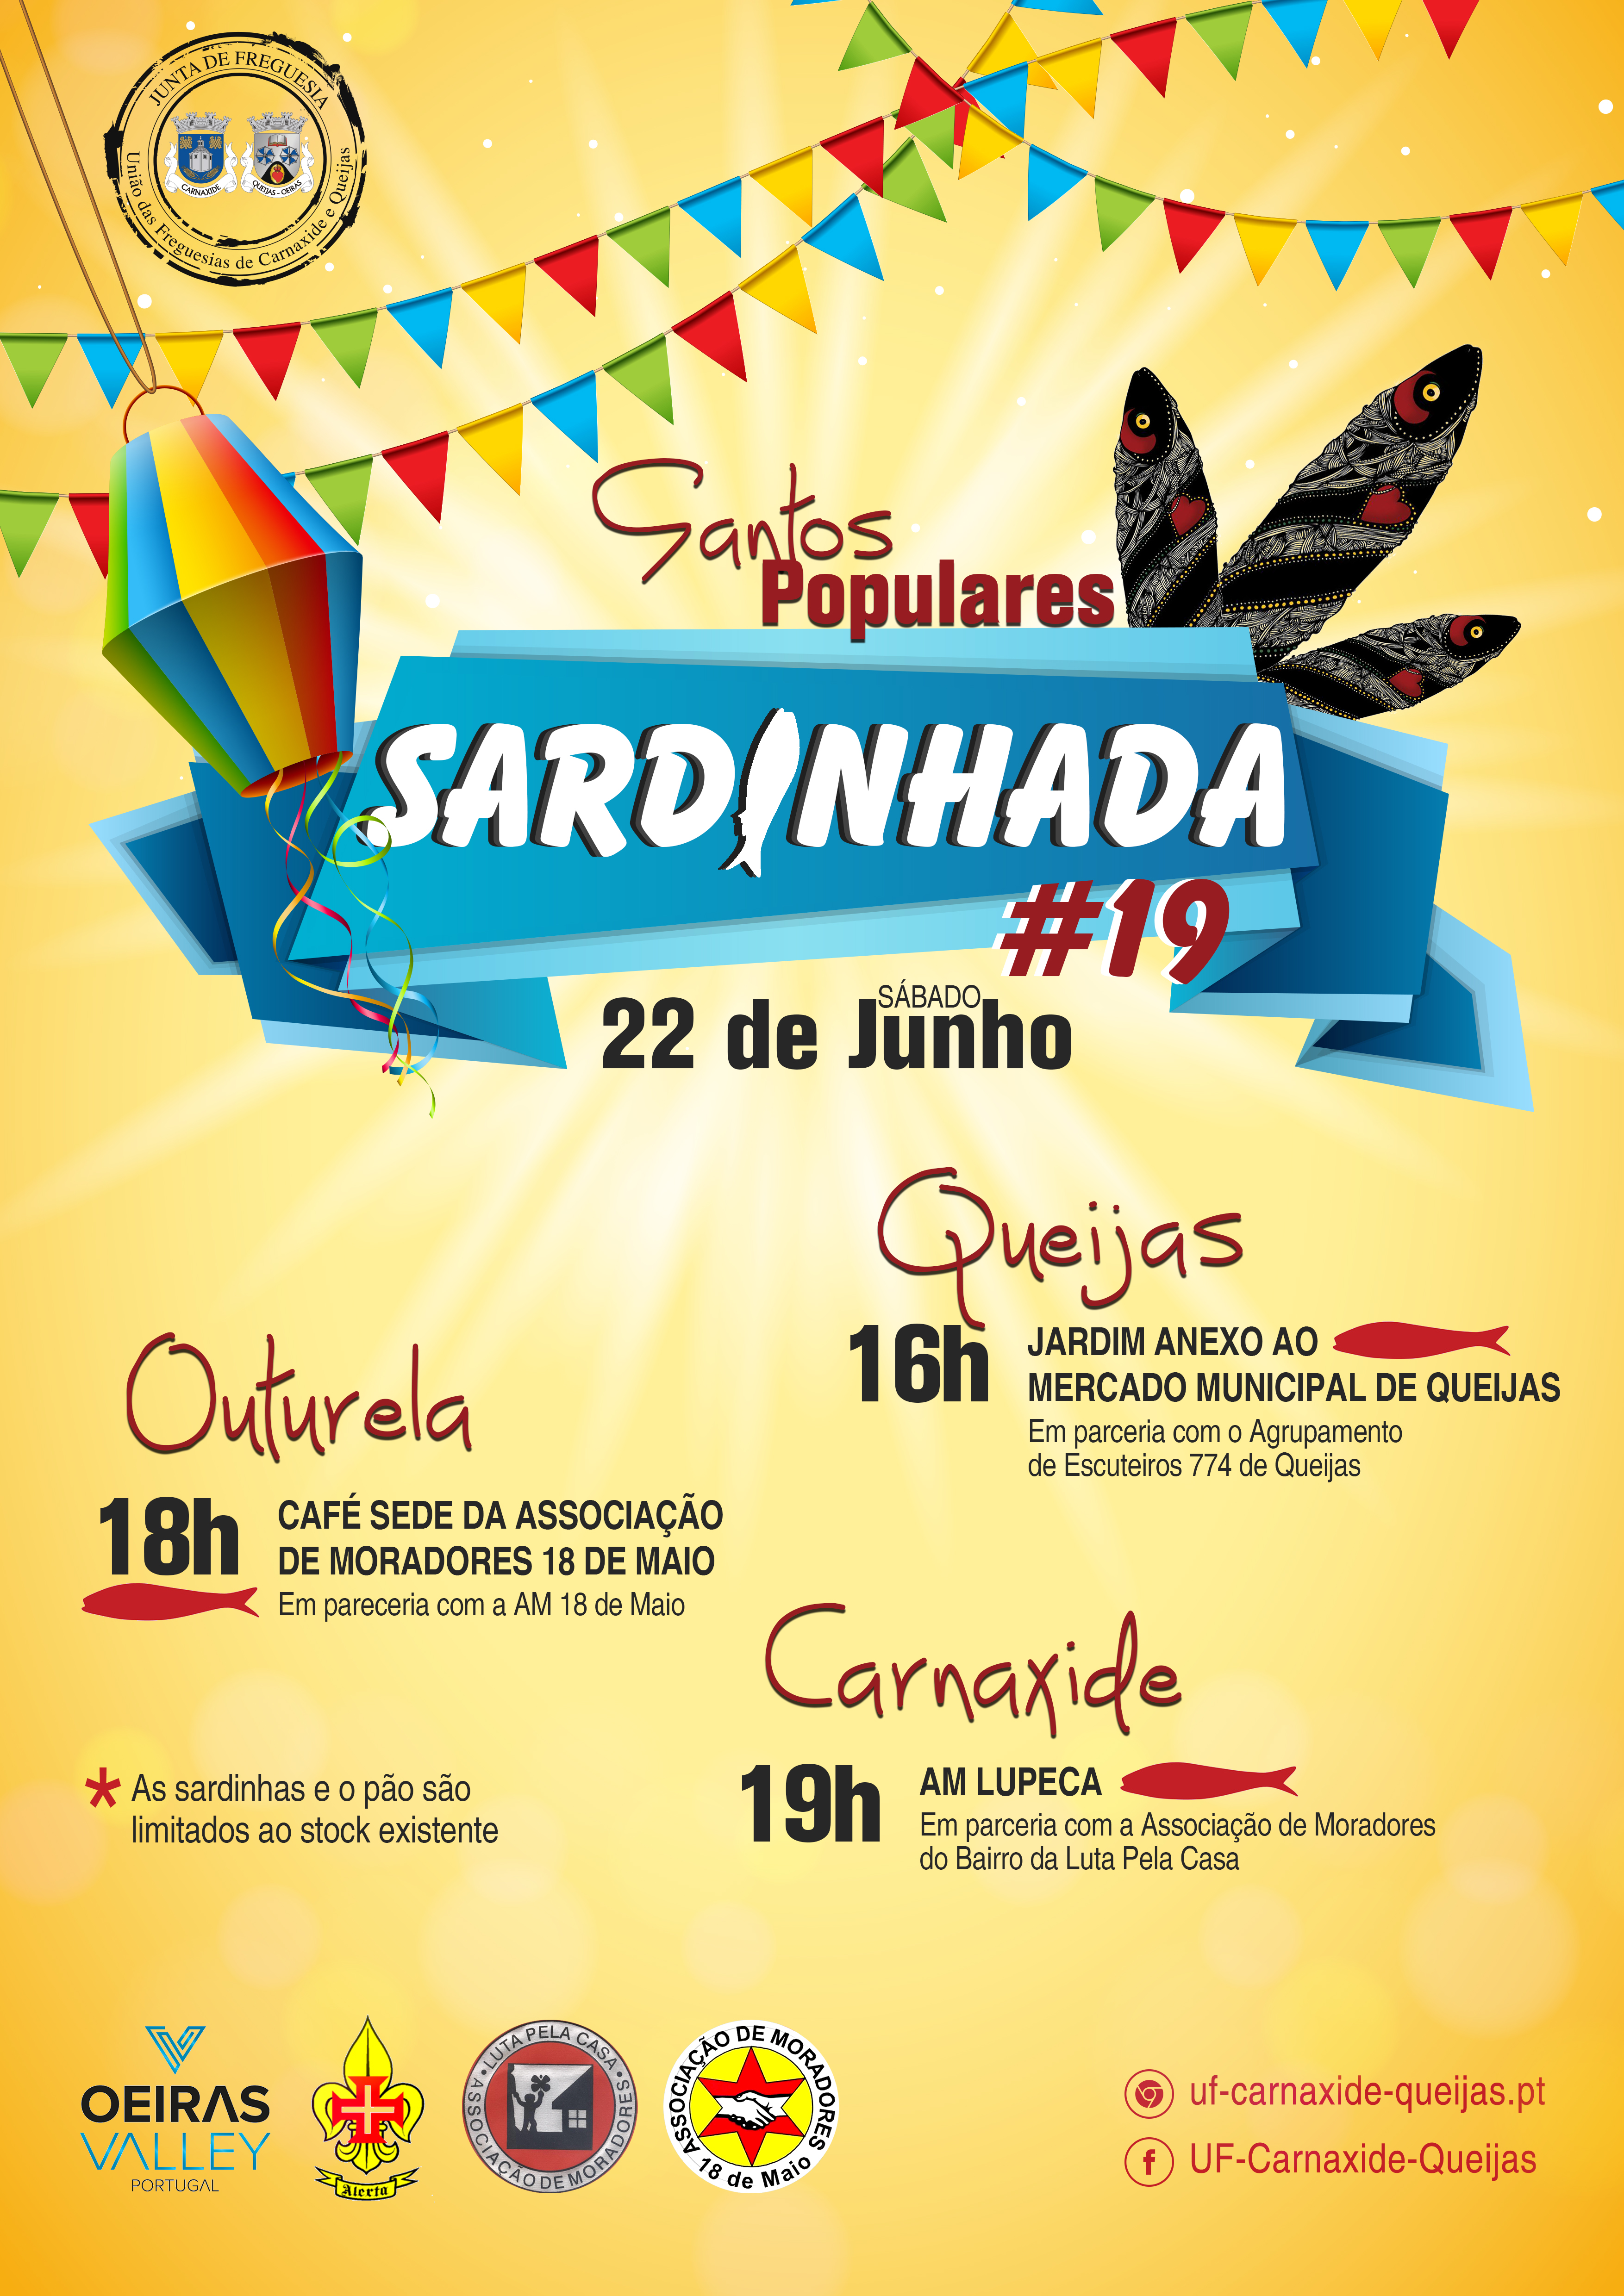 Sardinhada 2019 - 22 de Junho - Queijas, Outurela e Carnaxide